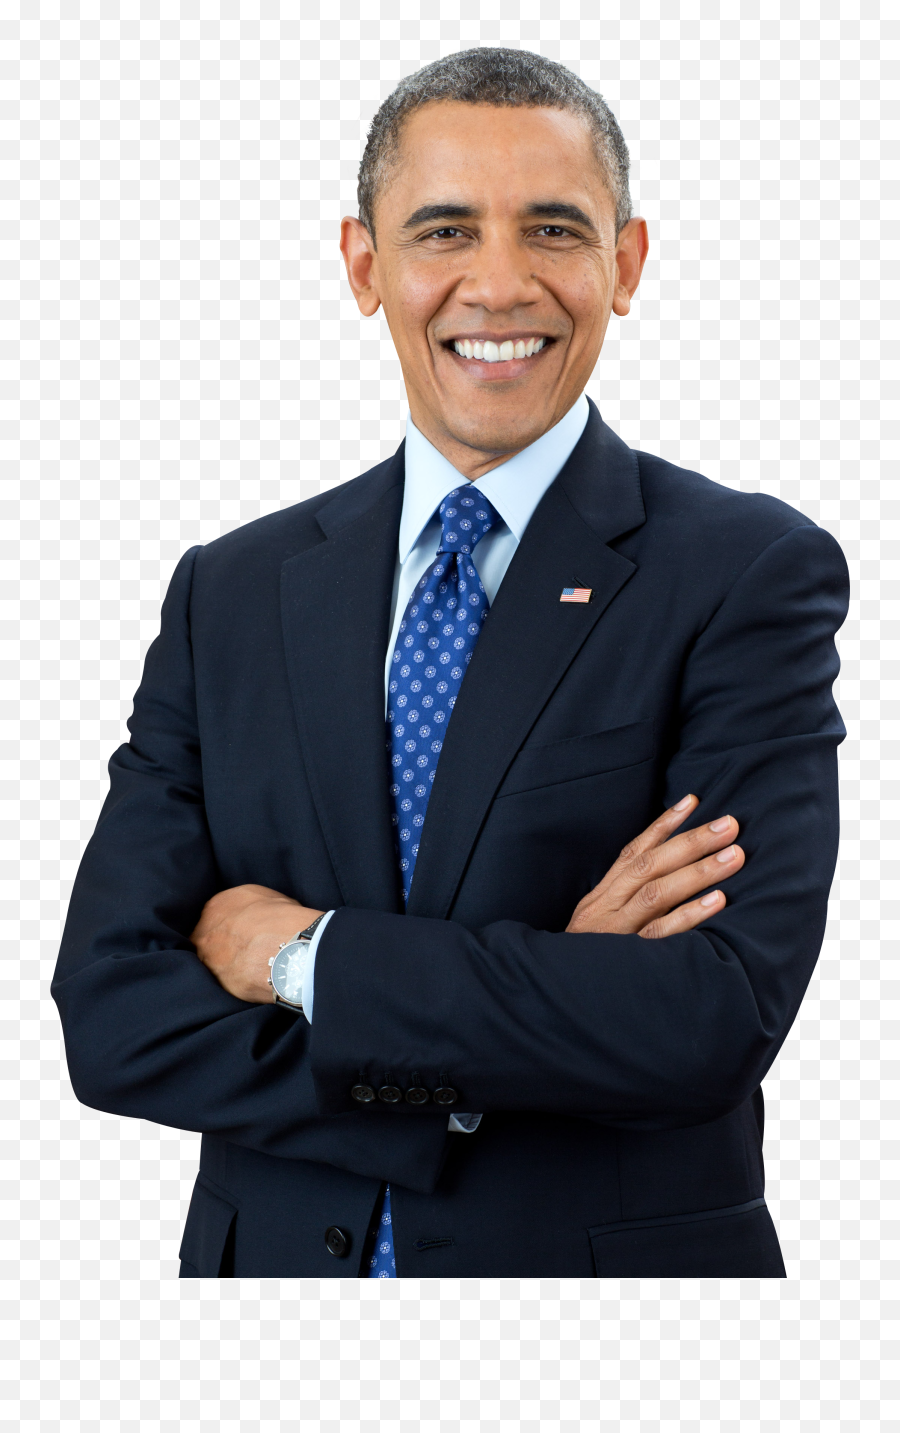 Download Barack Obama Png Image For Free - Obama Png Transparent,Obama Transparent